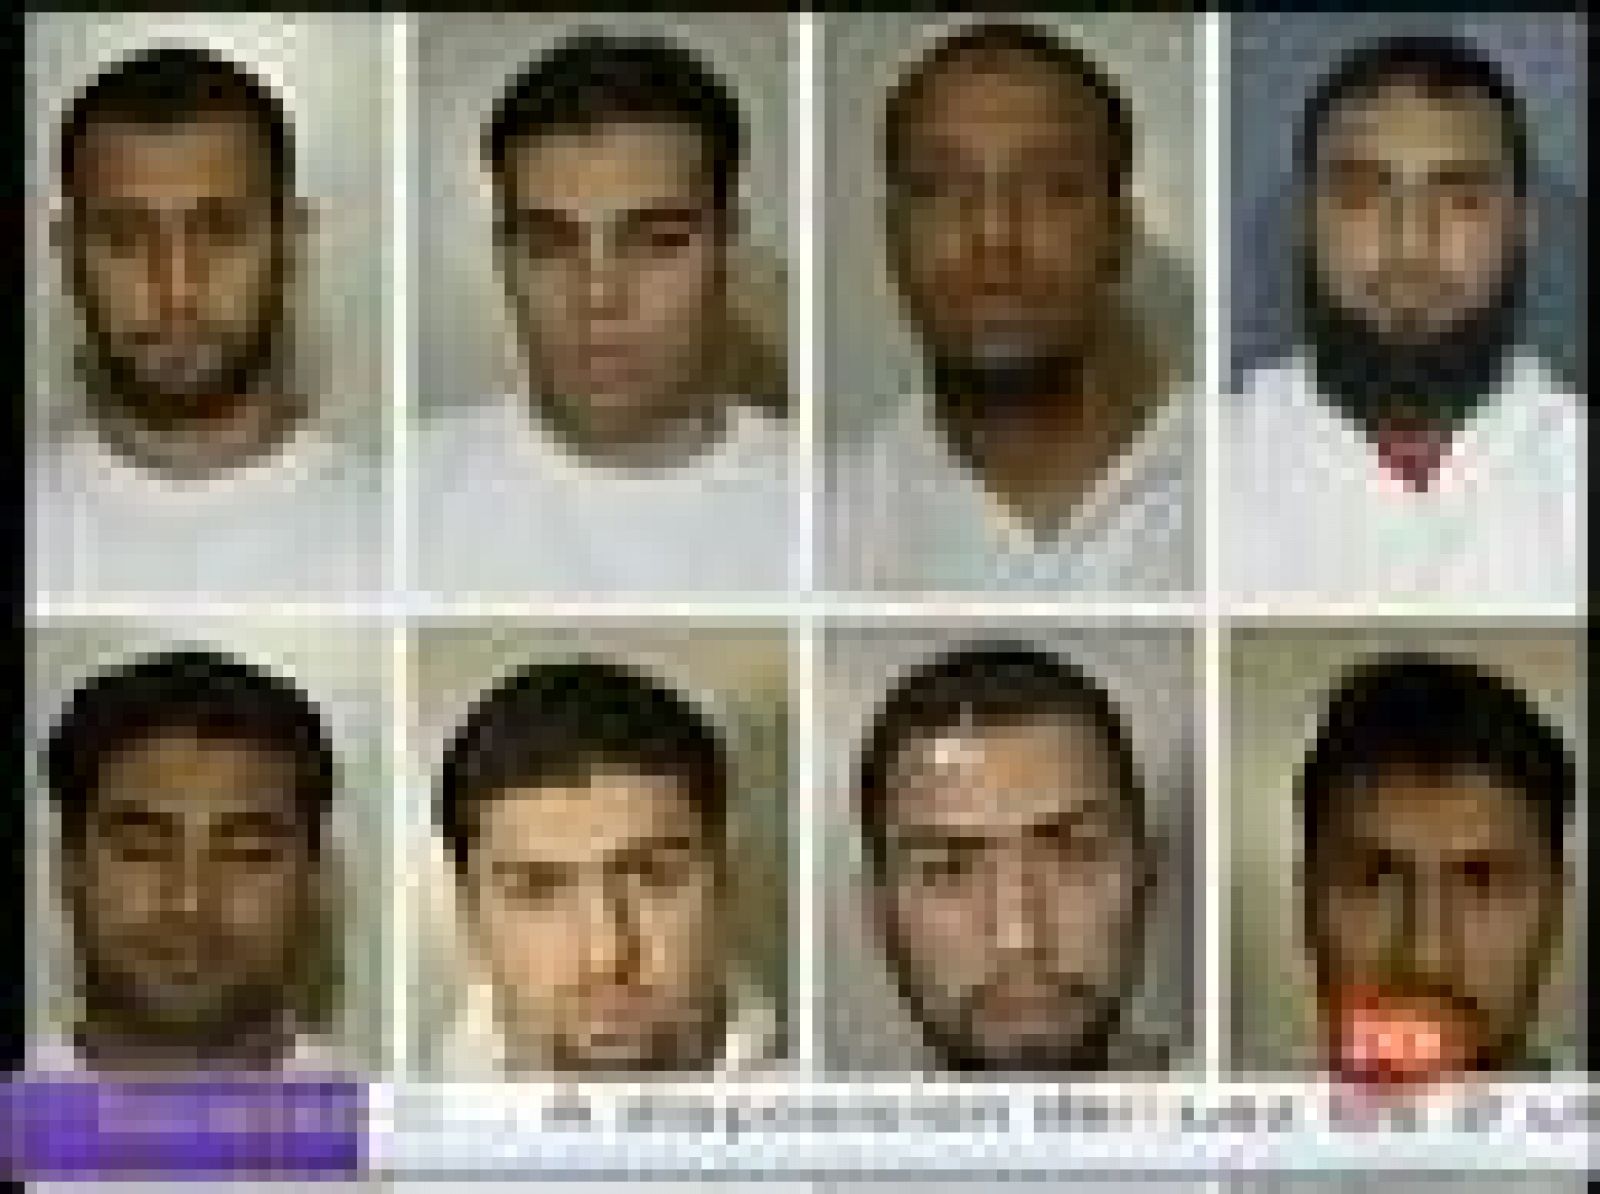 Siete musulmanes británicos acusados en el Reino Unido de complot para derribar aviones en vuelo mediante líquidos explosivos van a volver a ser juzgados.